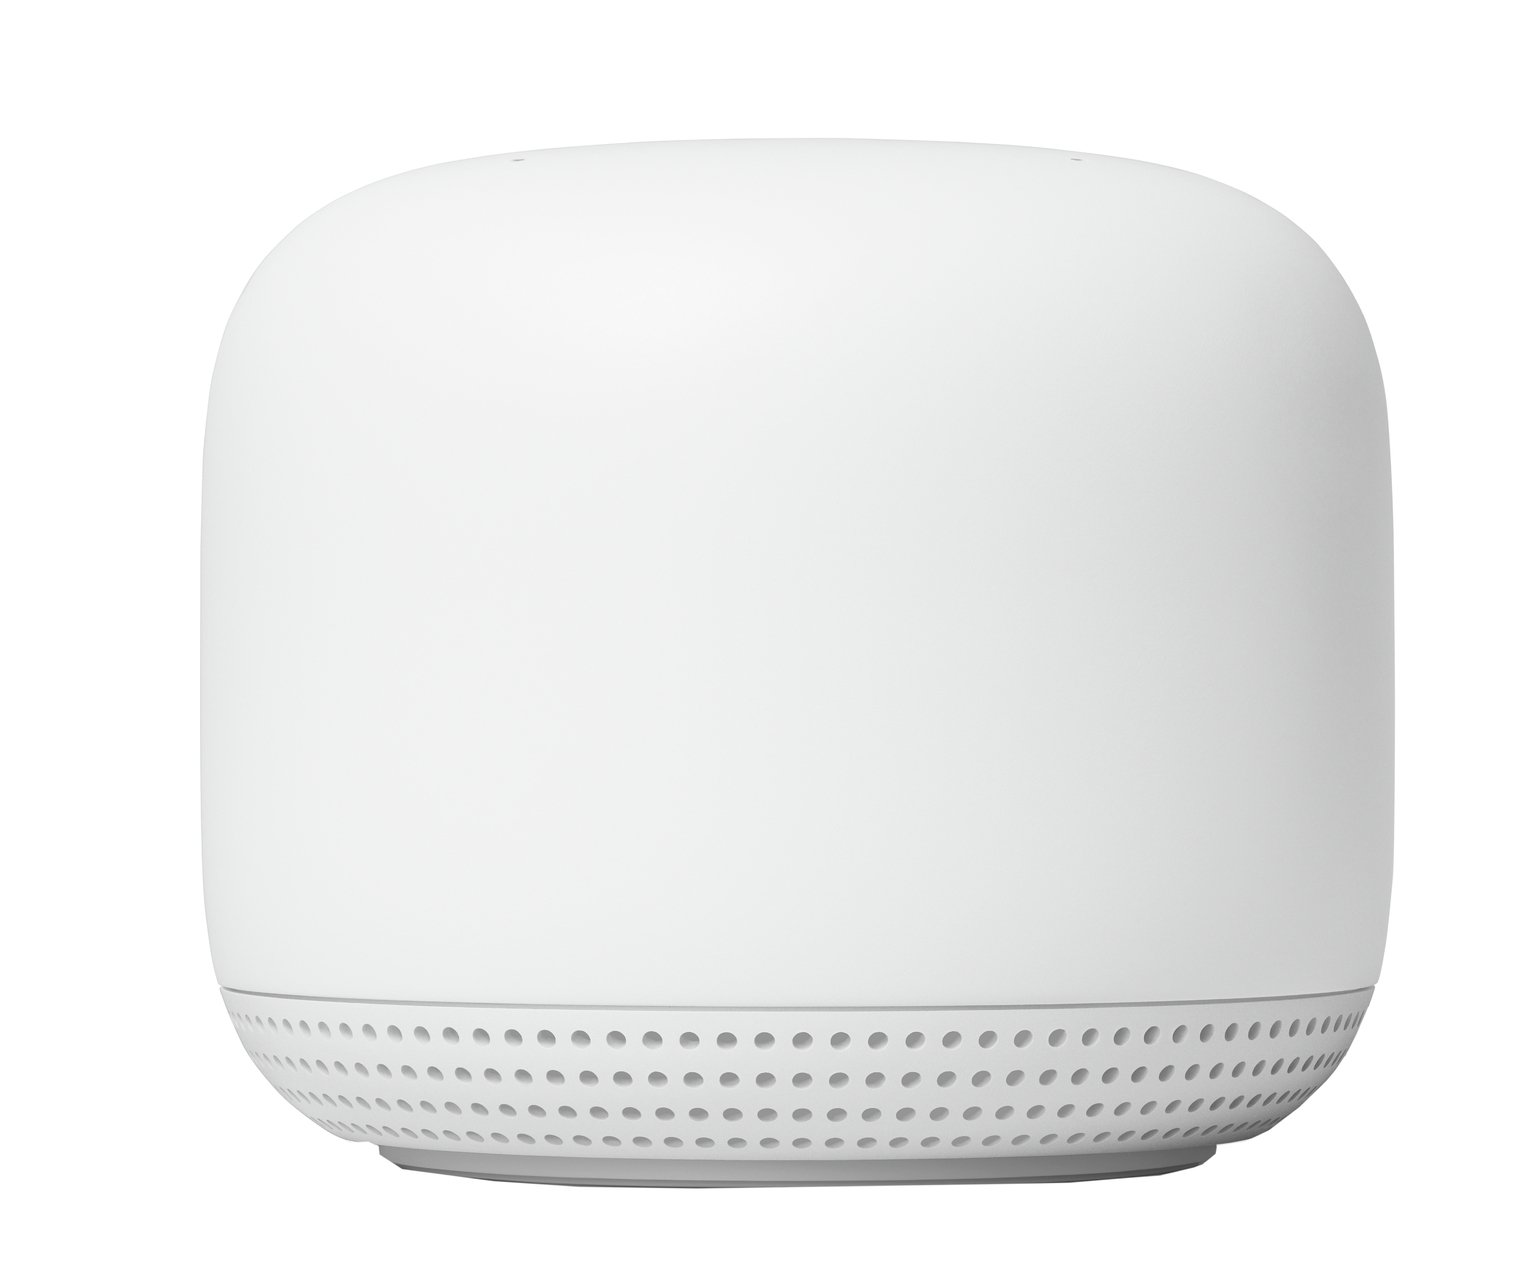 Google Nest Wi-Fi Point Add-On Wi-Fi Extender